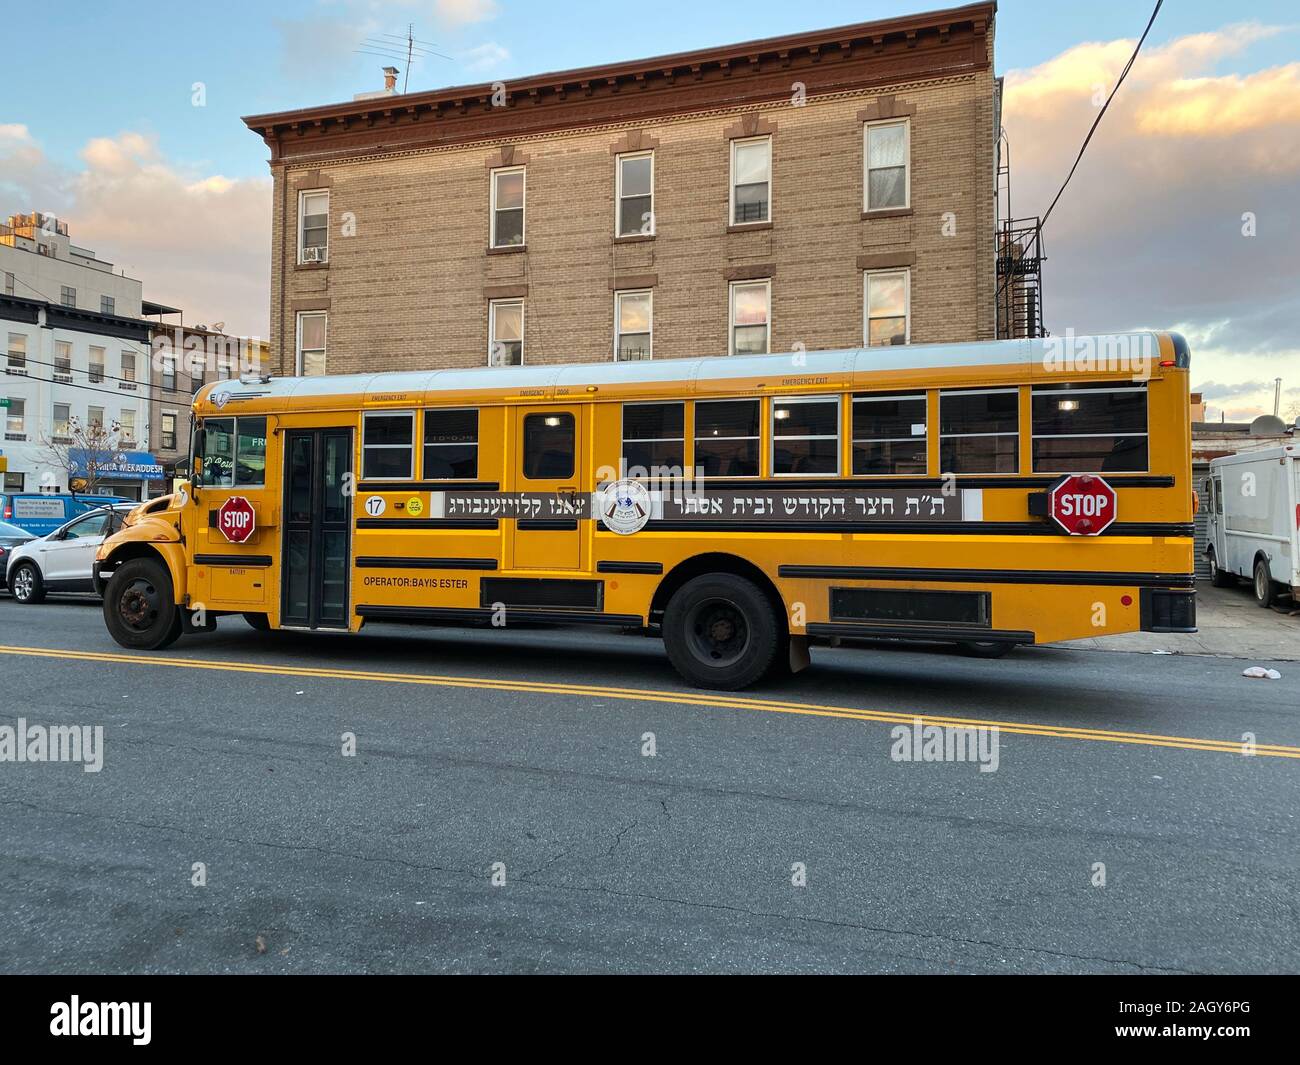 Hebräische Buchstaben auf einer orthodoxen private Schule Schule Bus im Borough Park, einer orthodoxen jüdischen Nachbarschaft, in Brooklyn, New York. Stockfoto